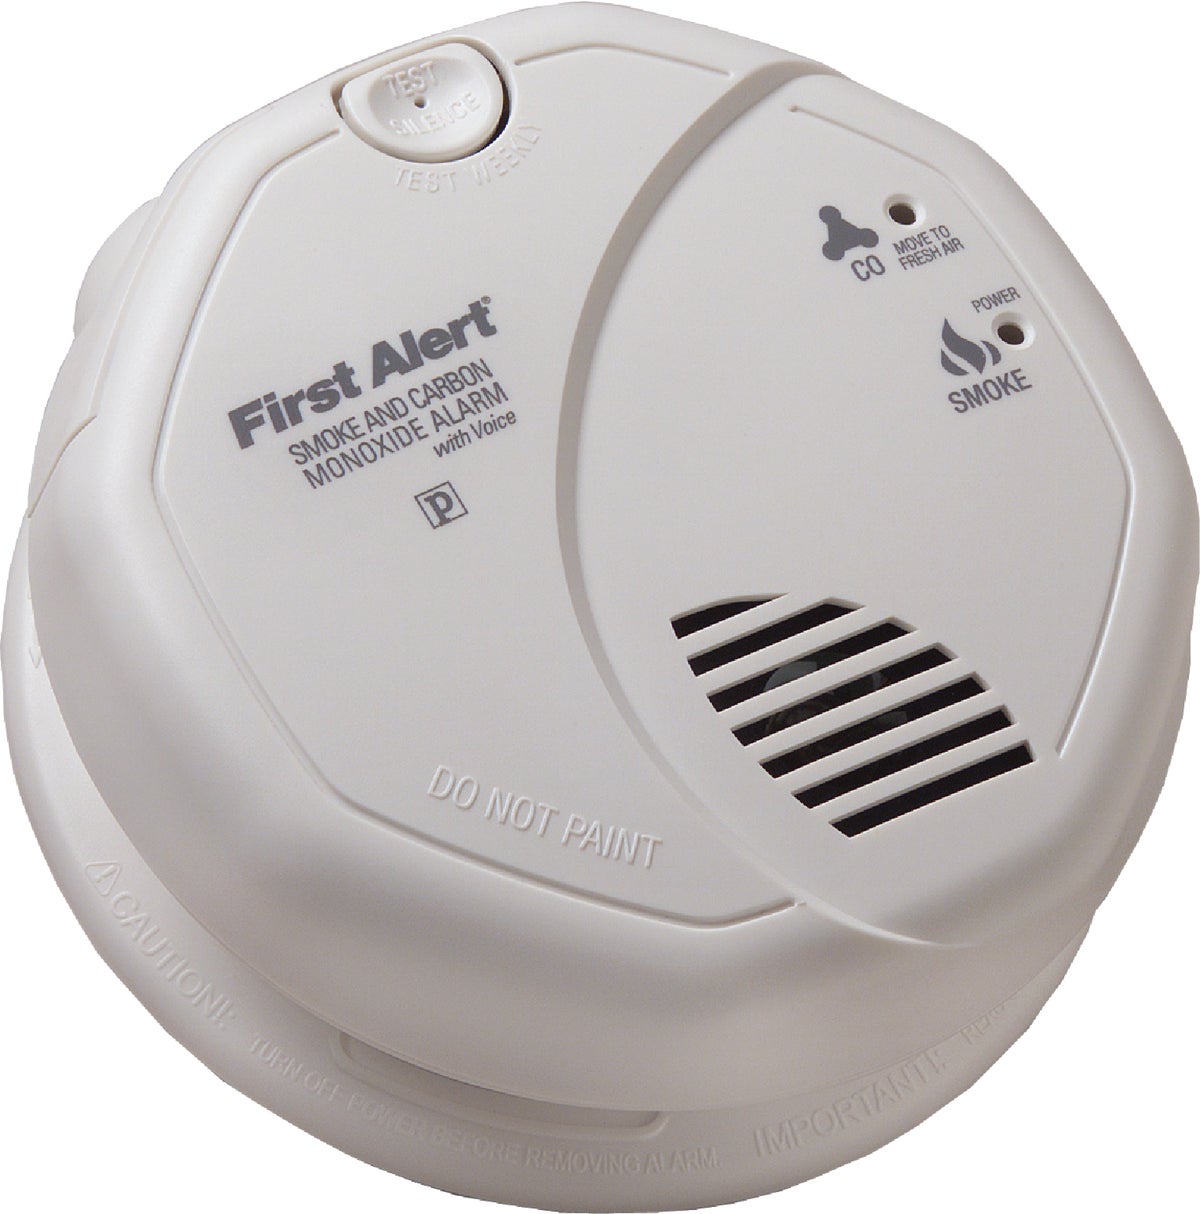 first alert carbon monoxide alarm steady red light reddit